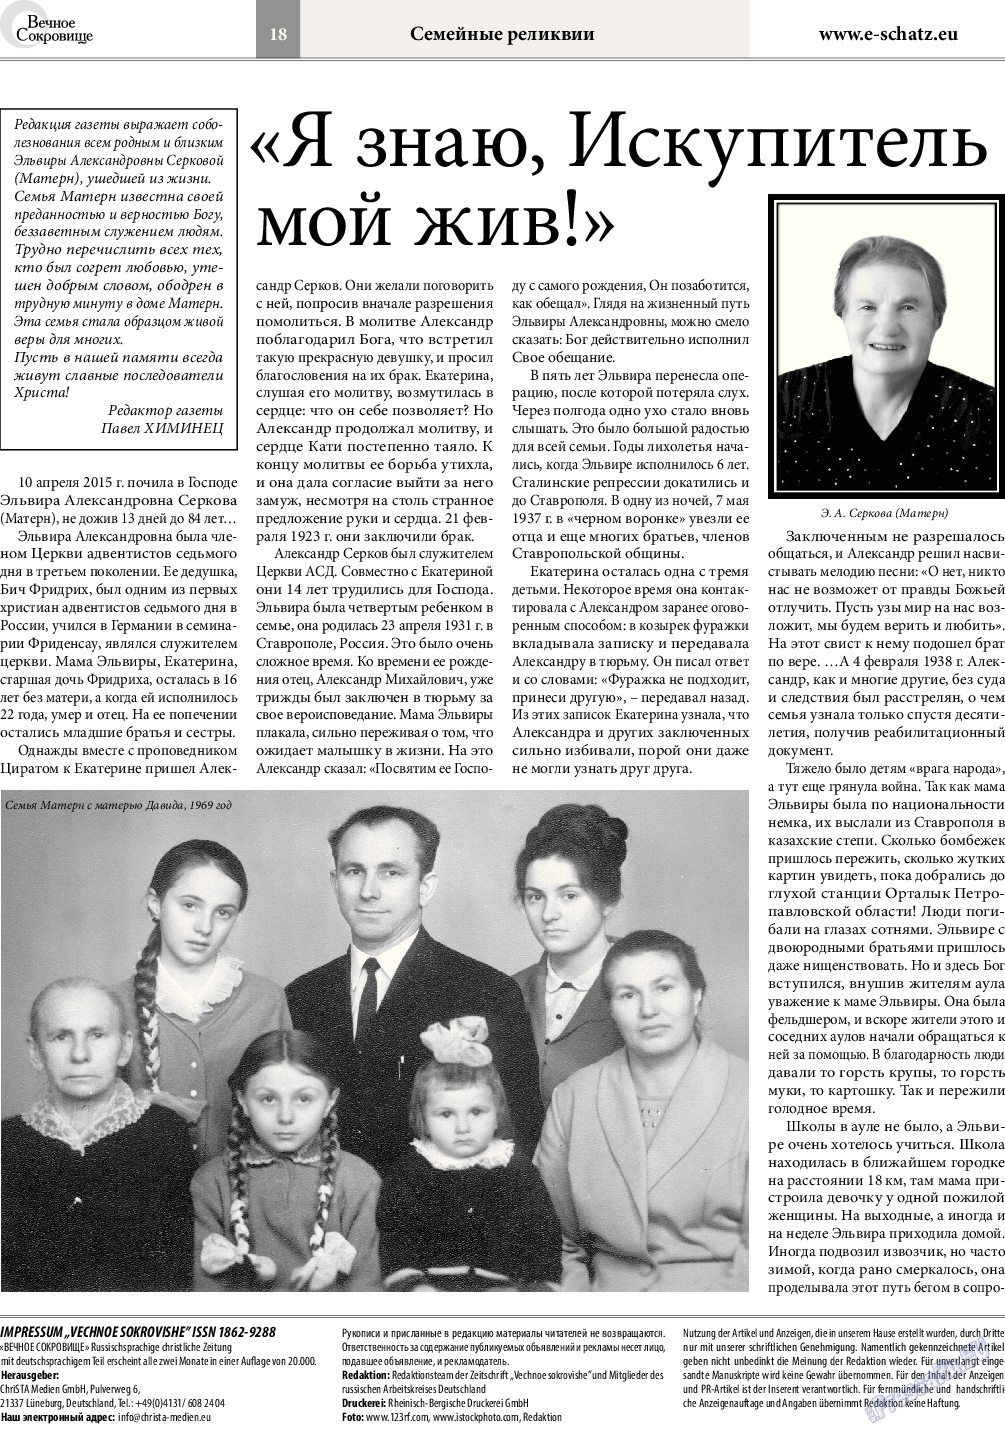 Вечное сокровище, газета. 2015 №3 стр.18